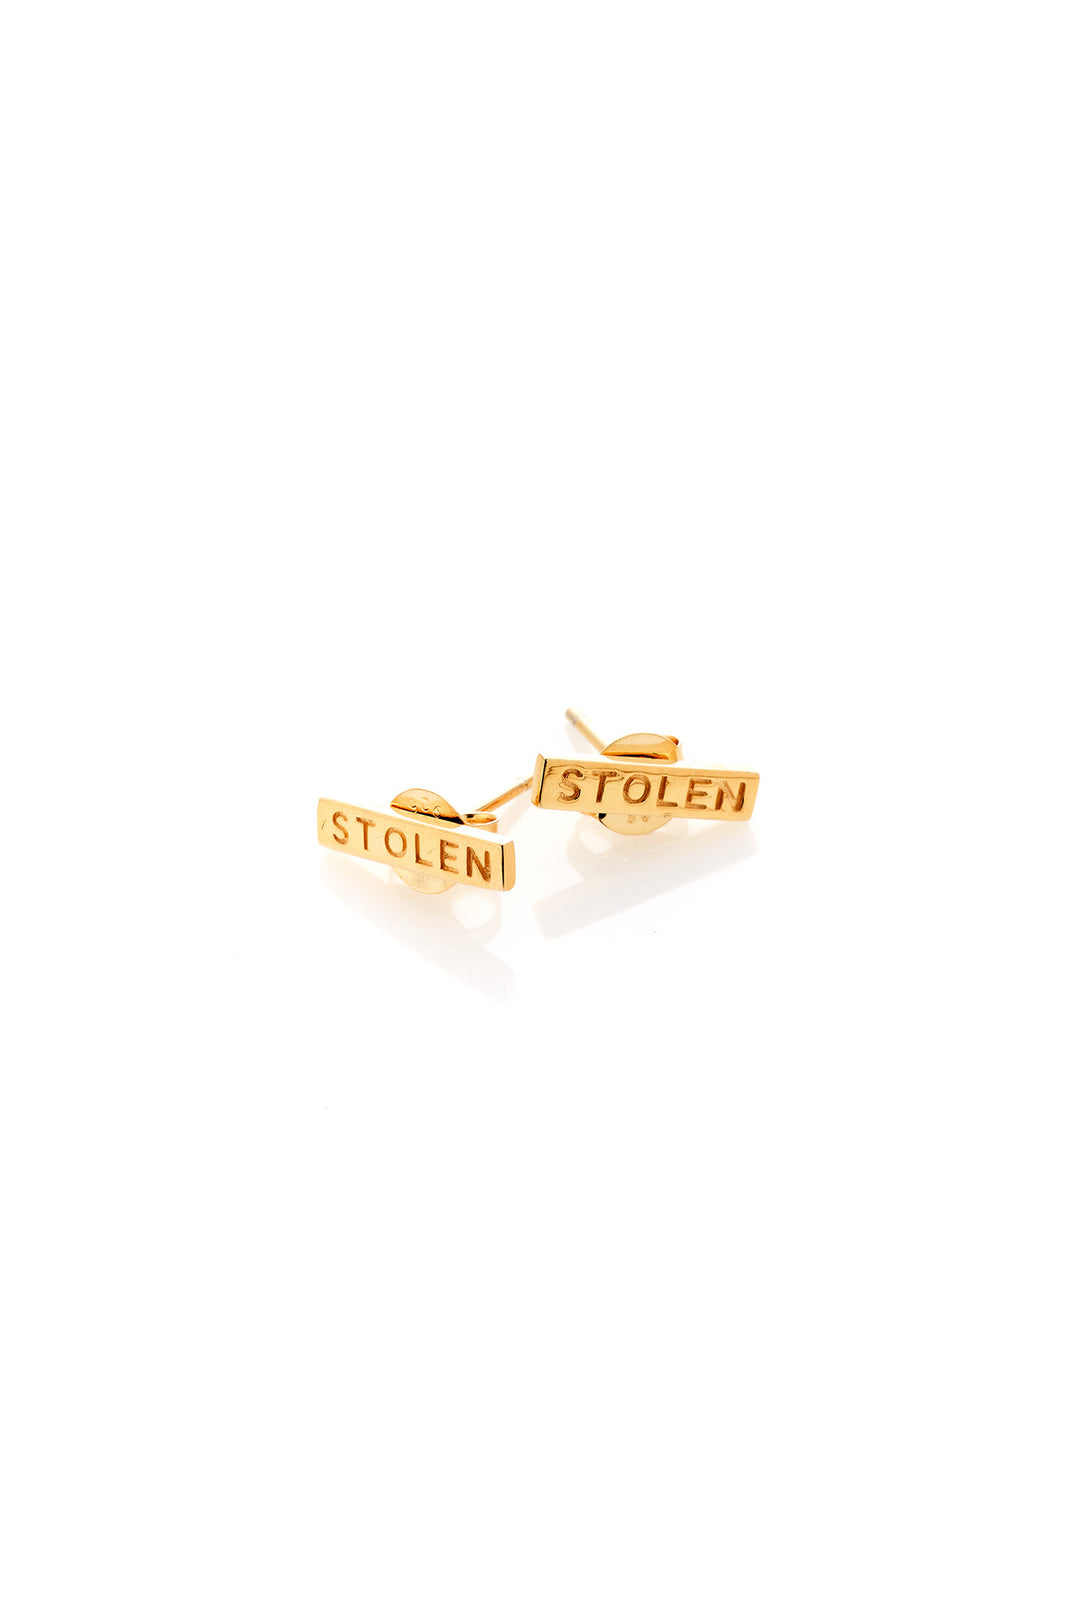 Stolen Girlfriends Club - Tiny Stolen Bar Earrings 18ct Gold Plated